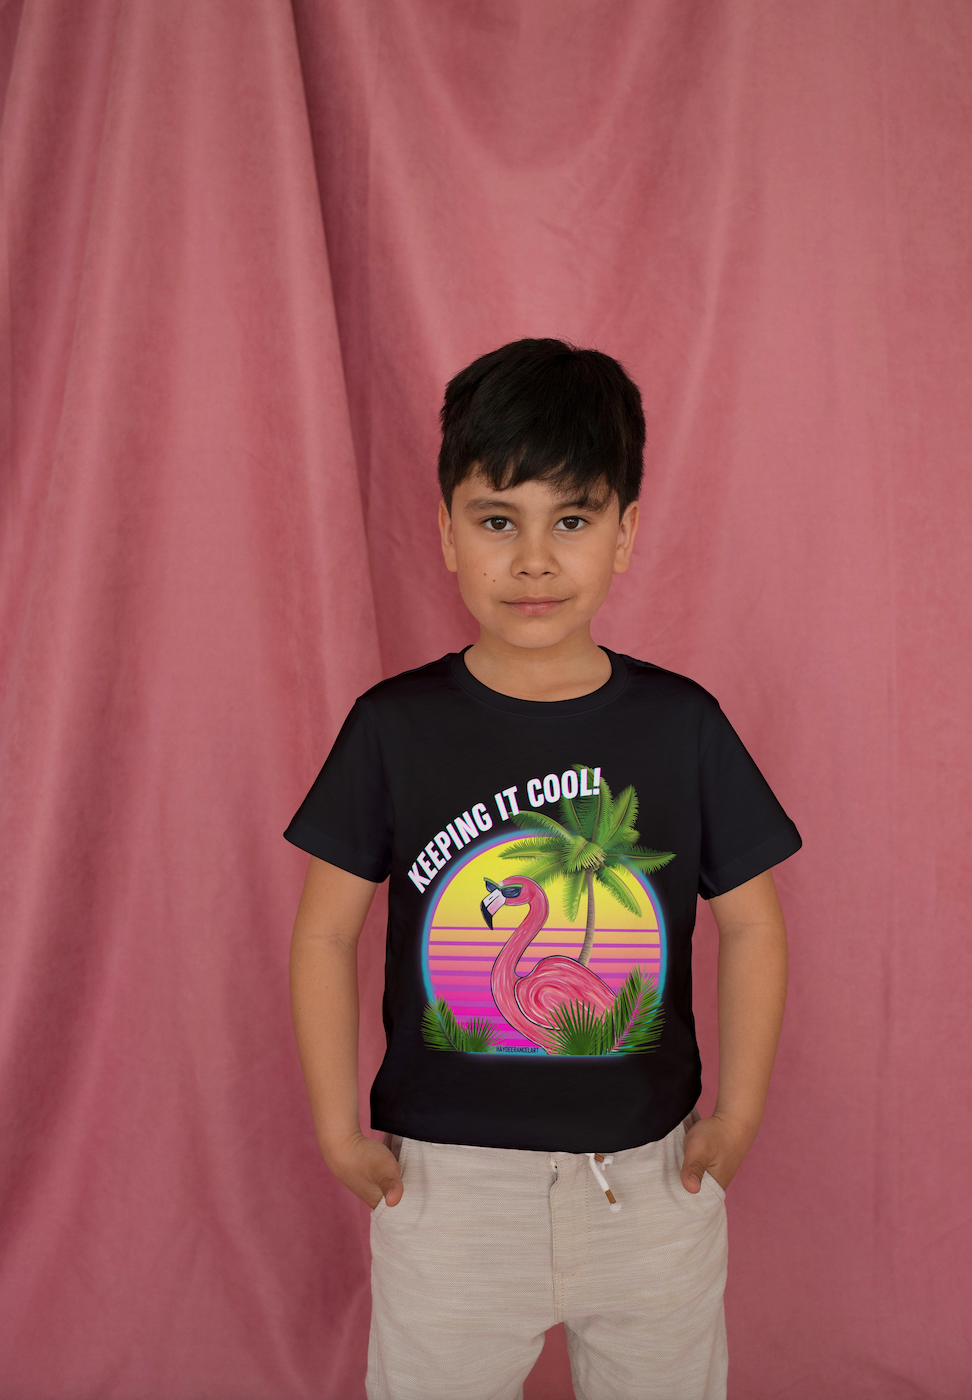 Keeping It Cool Flamingo Beach Sunset Unisex Kids Youth Short Sleeve Unisex Black T-shirt